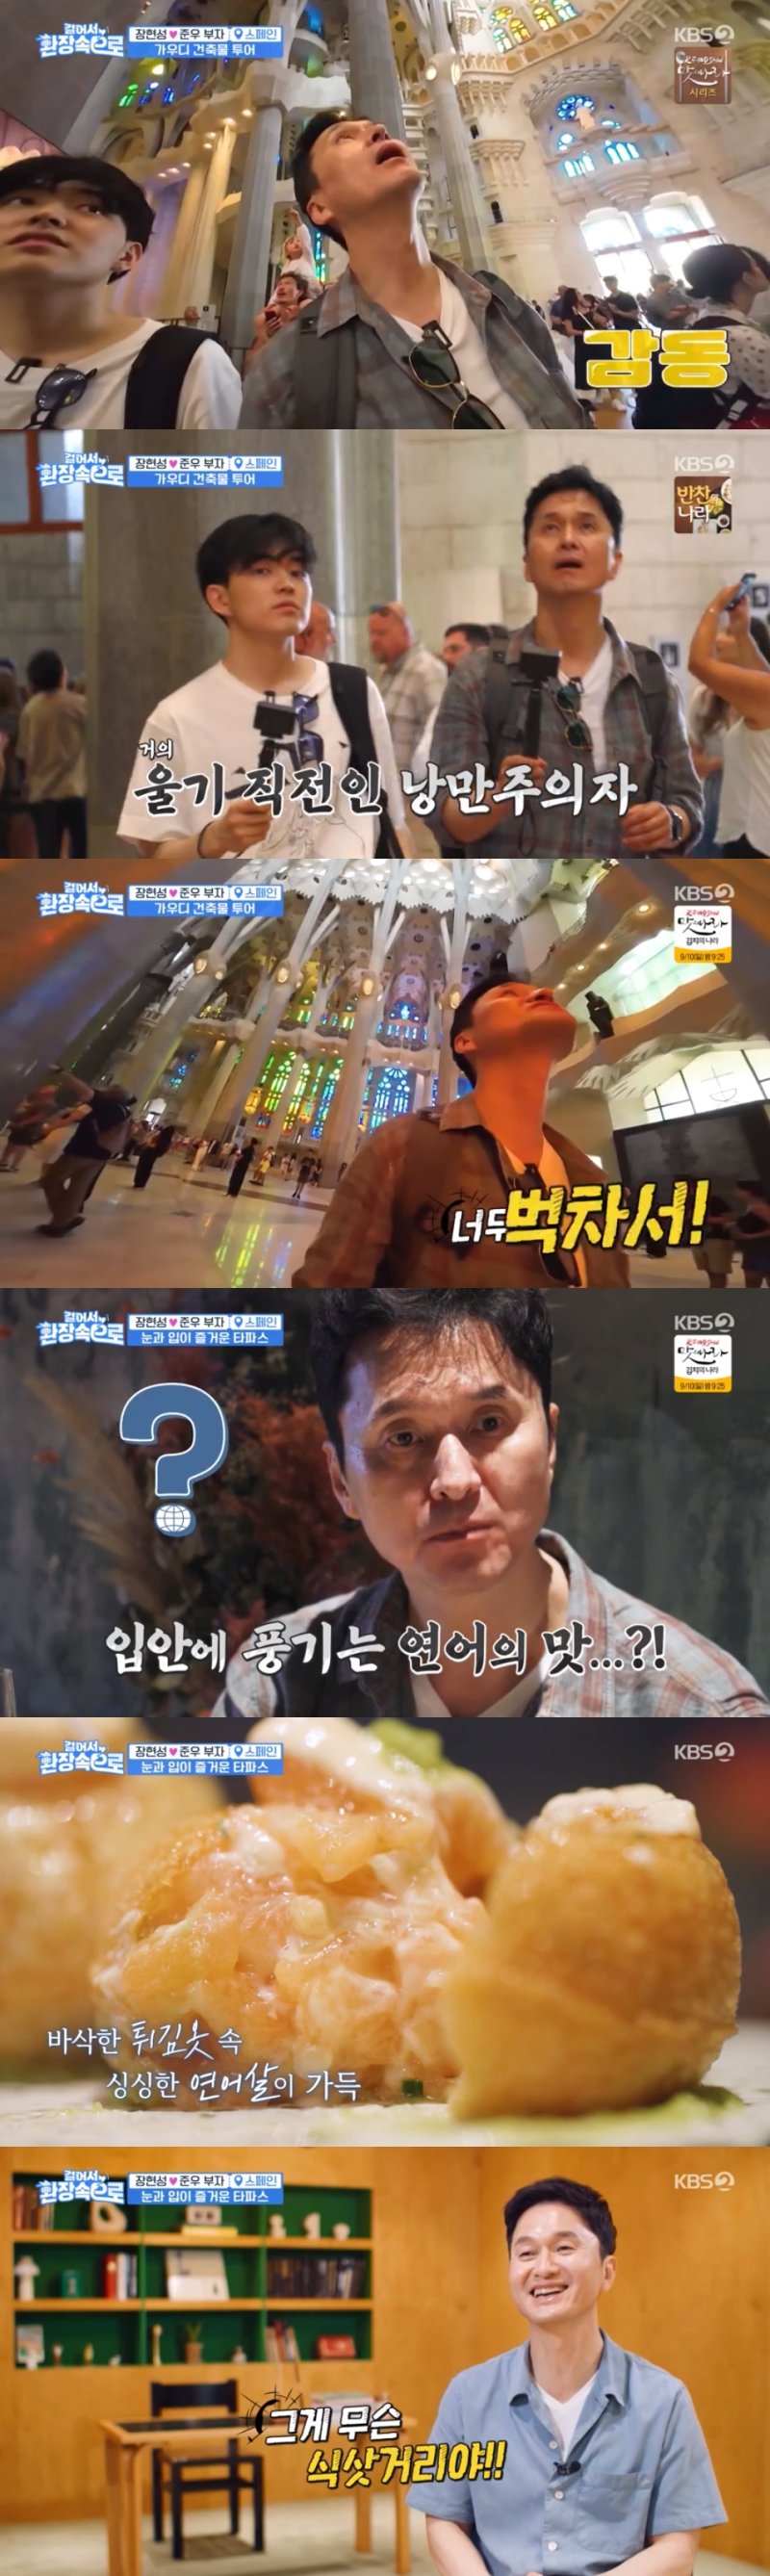 KBS 2TV '걸어서 환장 속으로' 방송 화면 캡처